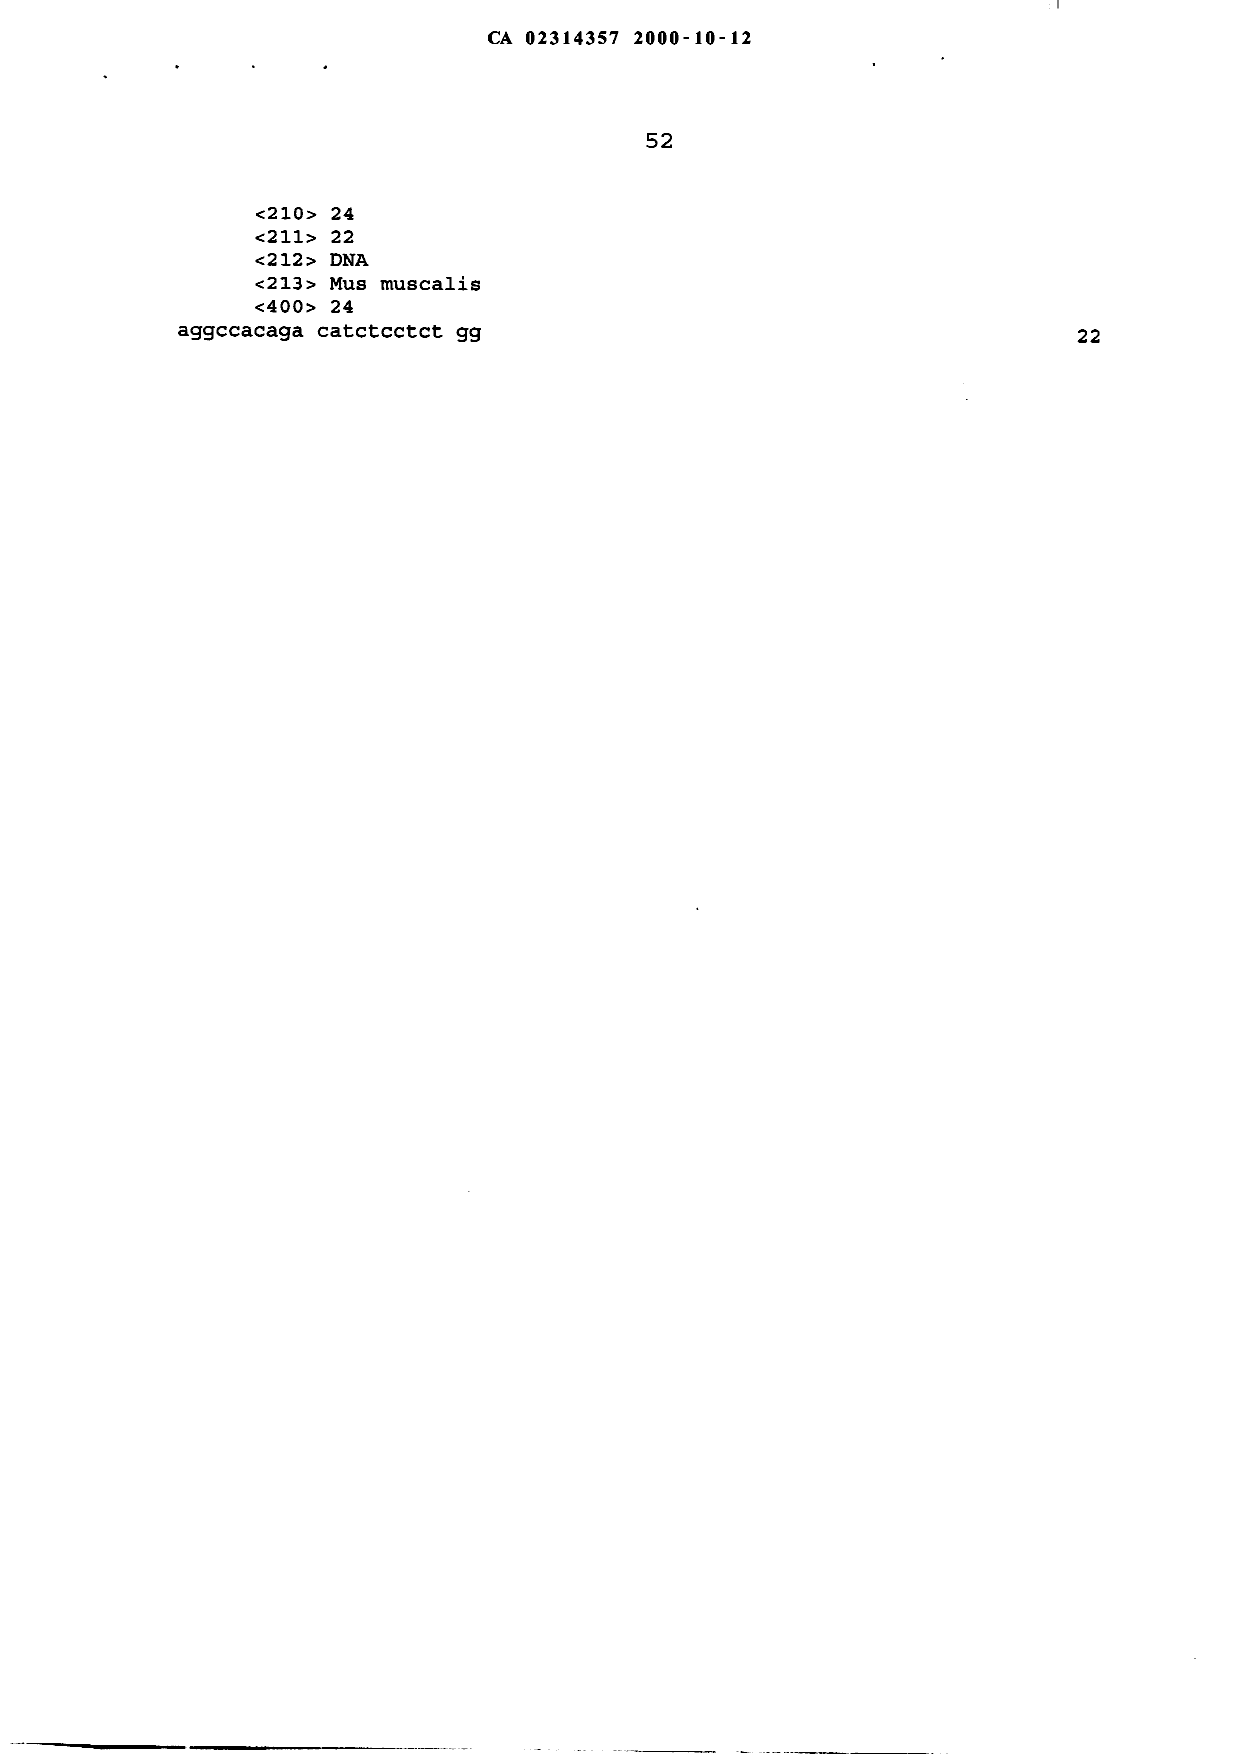 Canadian Patent Document 2314357. Description 20001012. Image 52 of 52